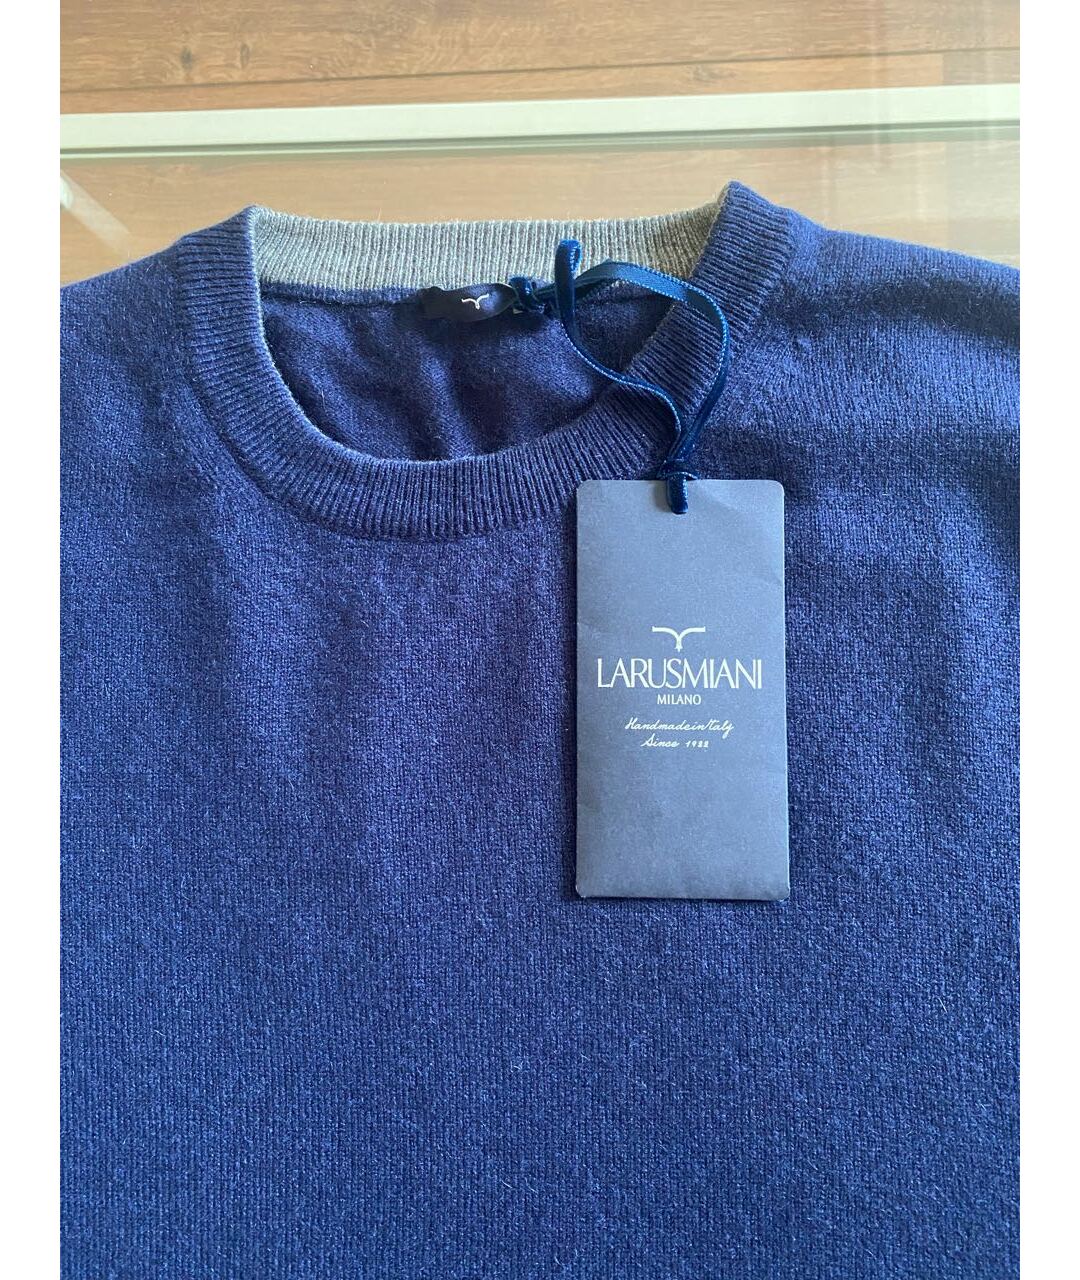 LARUSMIANI Синий кашемировый джемпер / свитер, фото 3